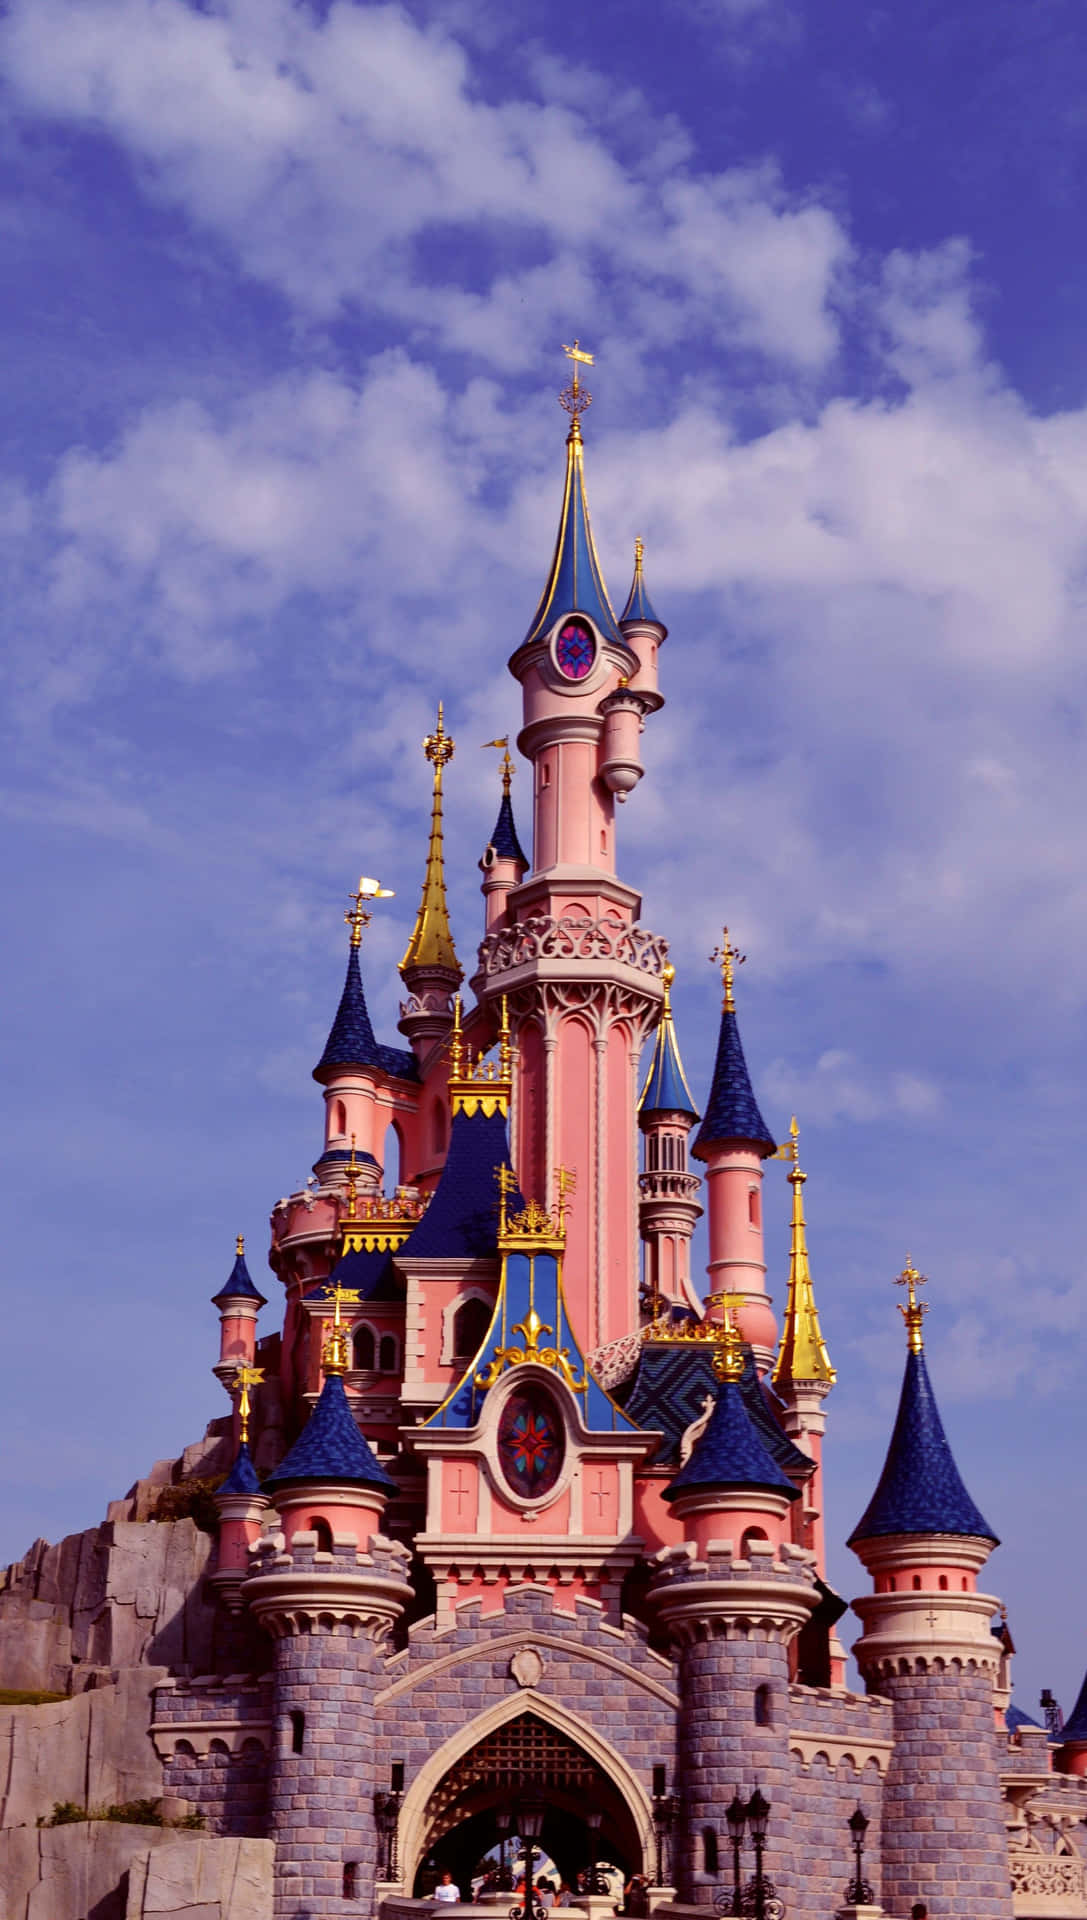 Udforsk magien ved Disney World med en iPhone- baggrund. Wallpaper